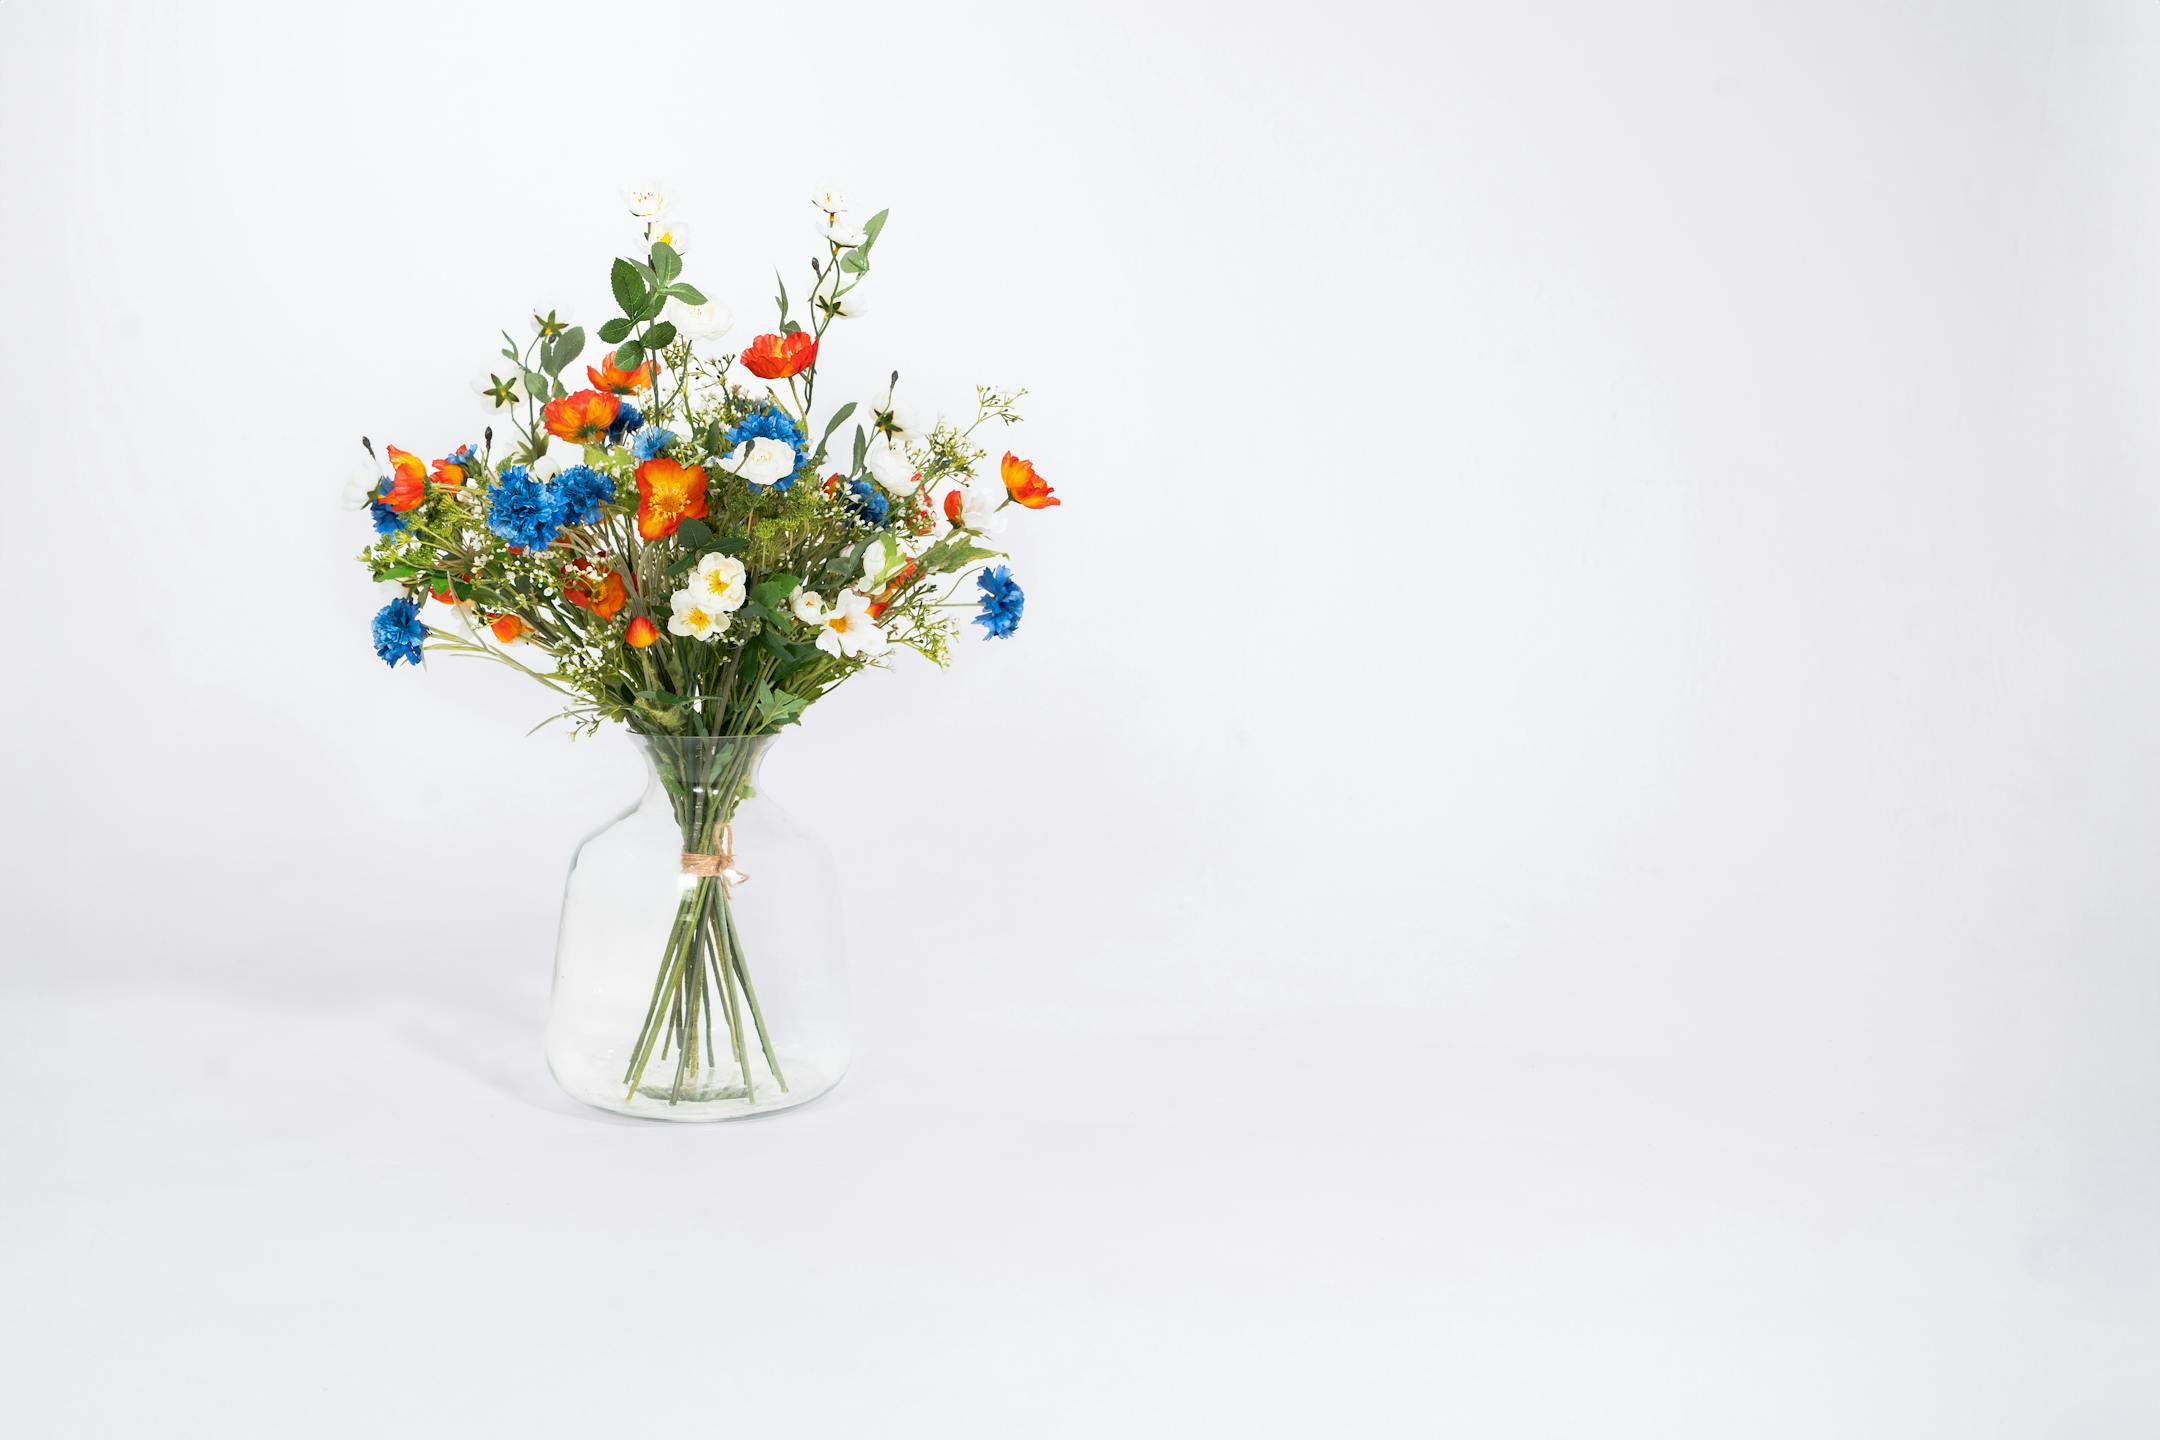 Faux meadow bouquet in glass vase